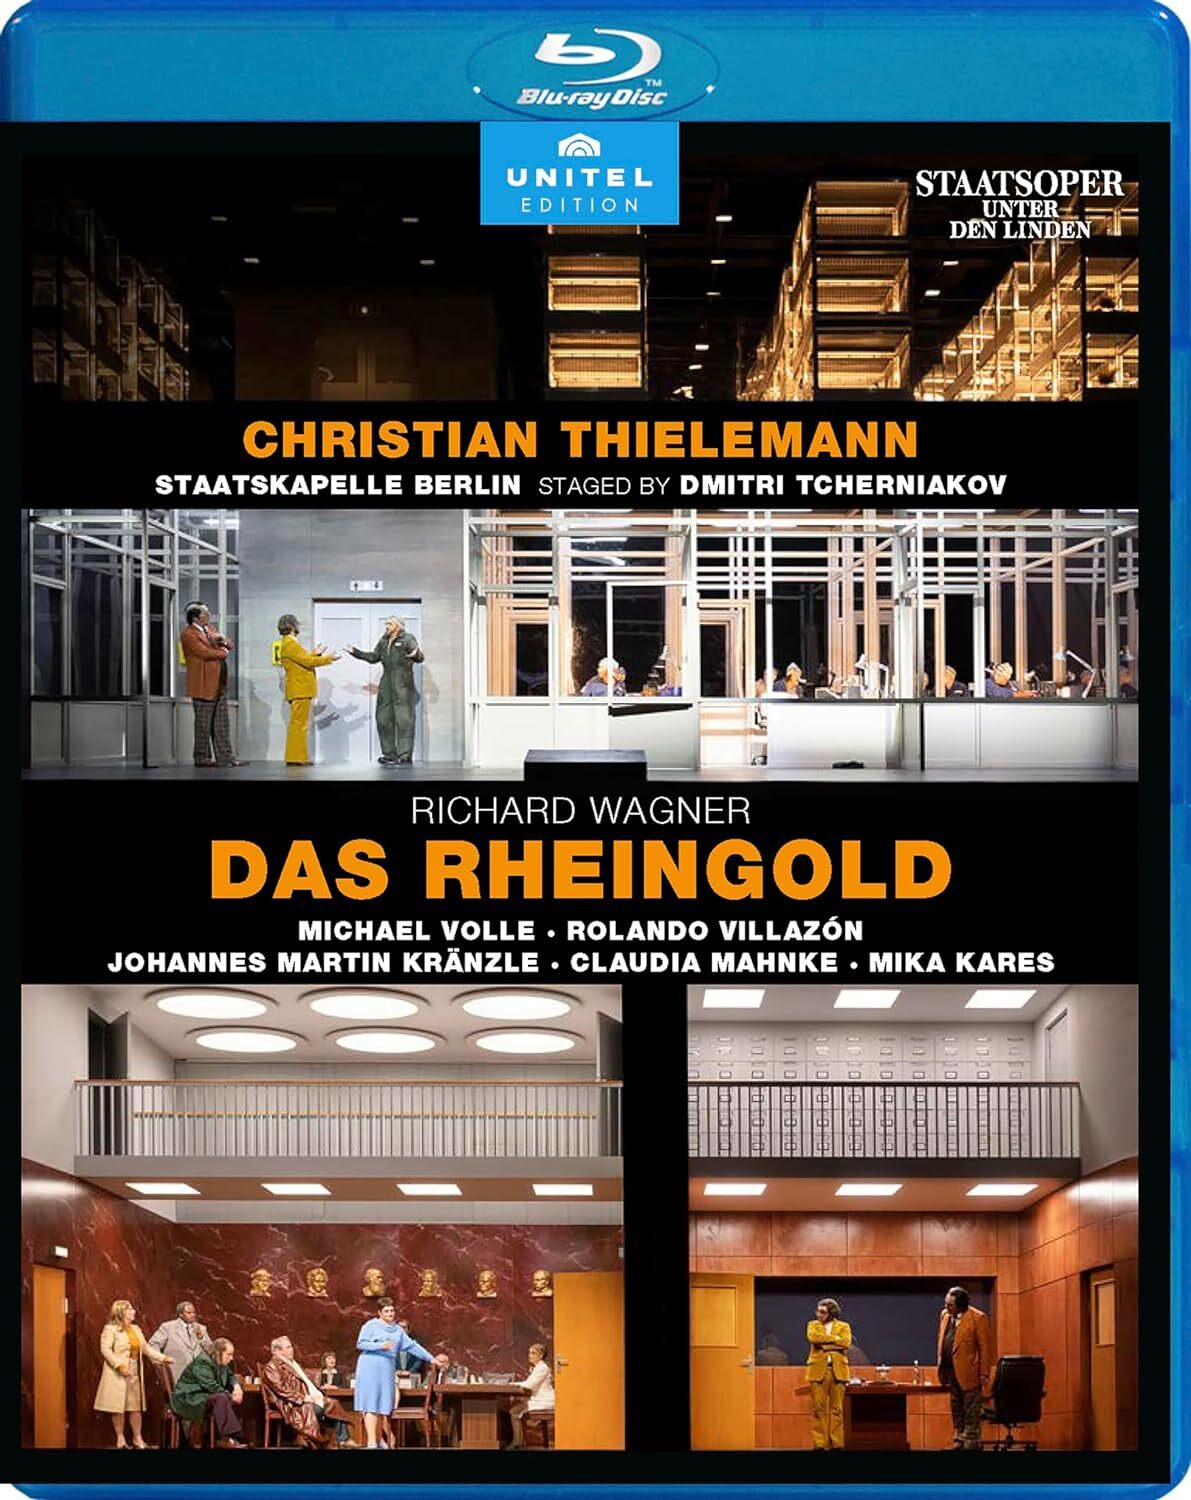 Richard Wagner: Das Rheingold Blu-ray (Staatsoper Unter den Linden